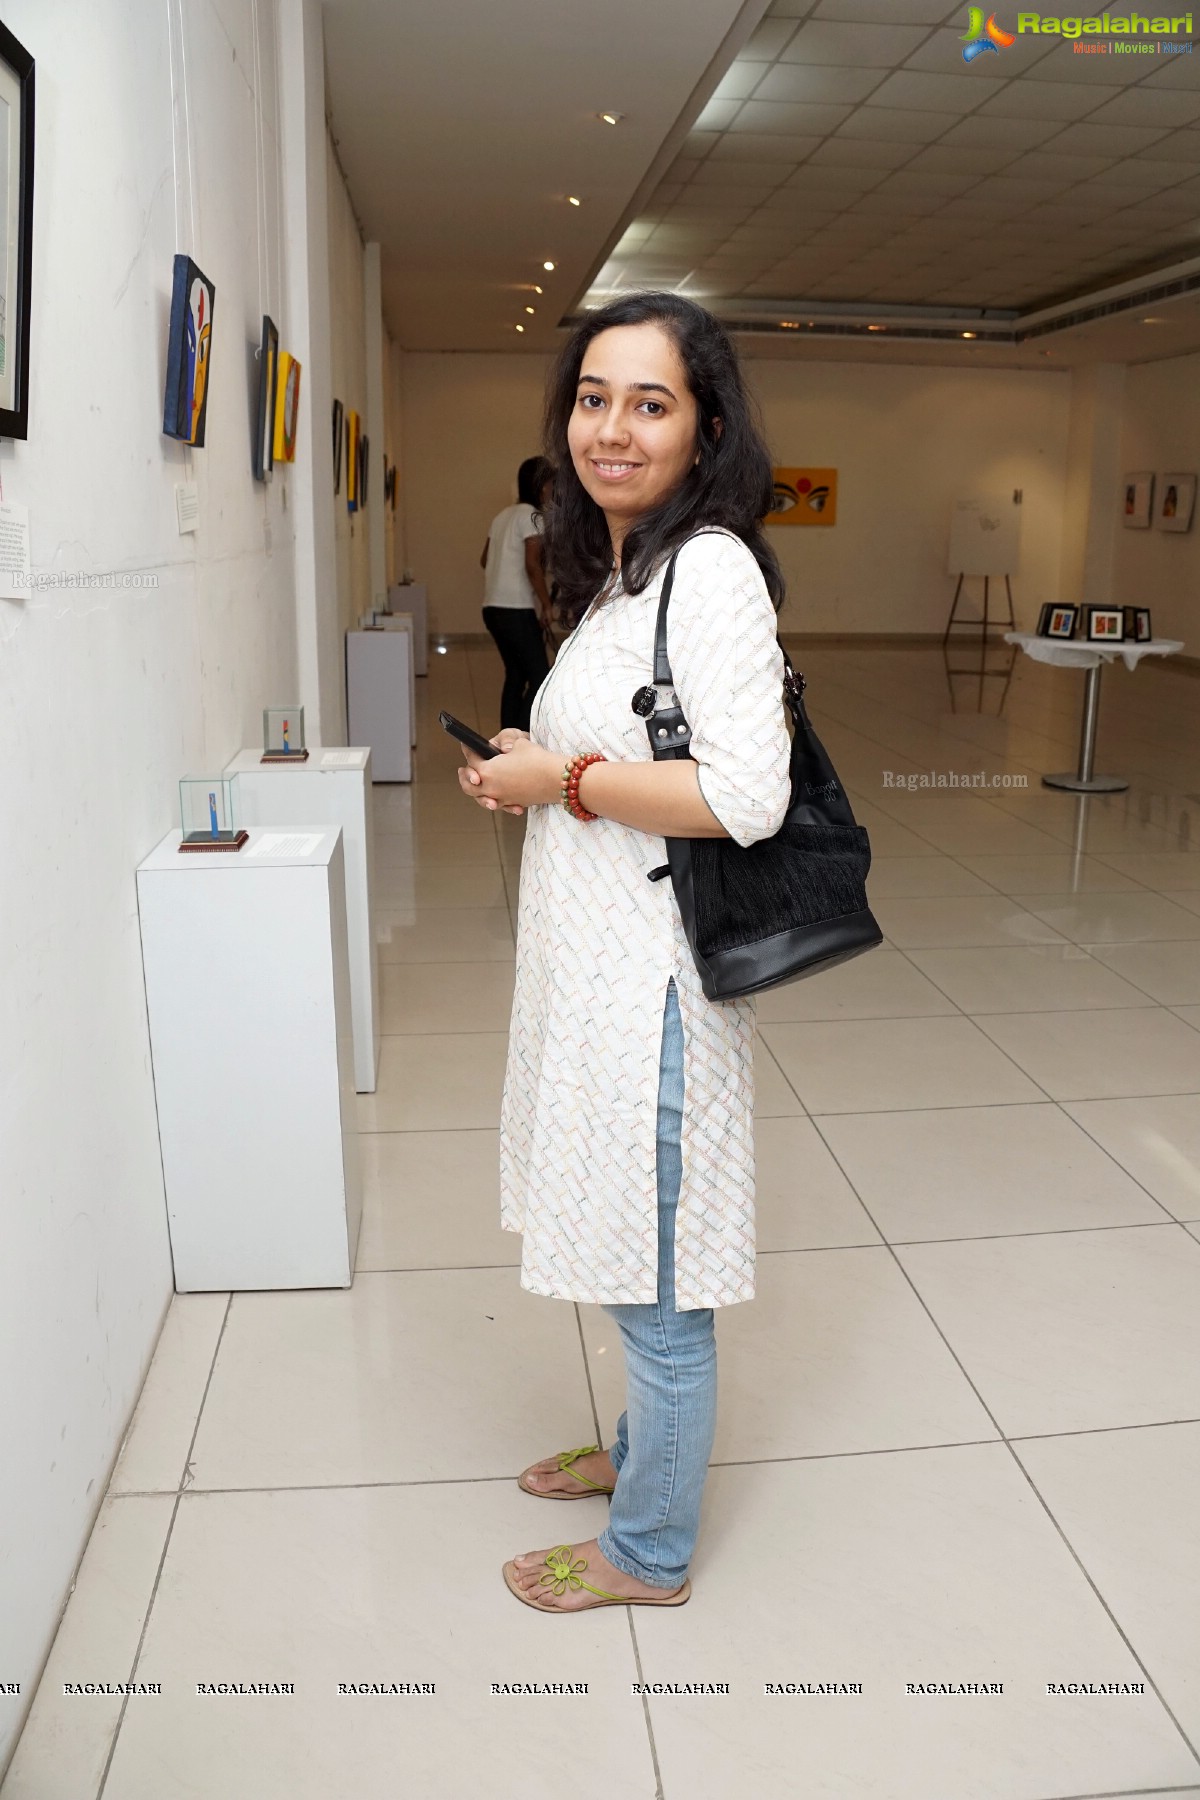 Maya Nelluri Art Exhibition at State Art Gallery